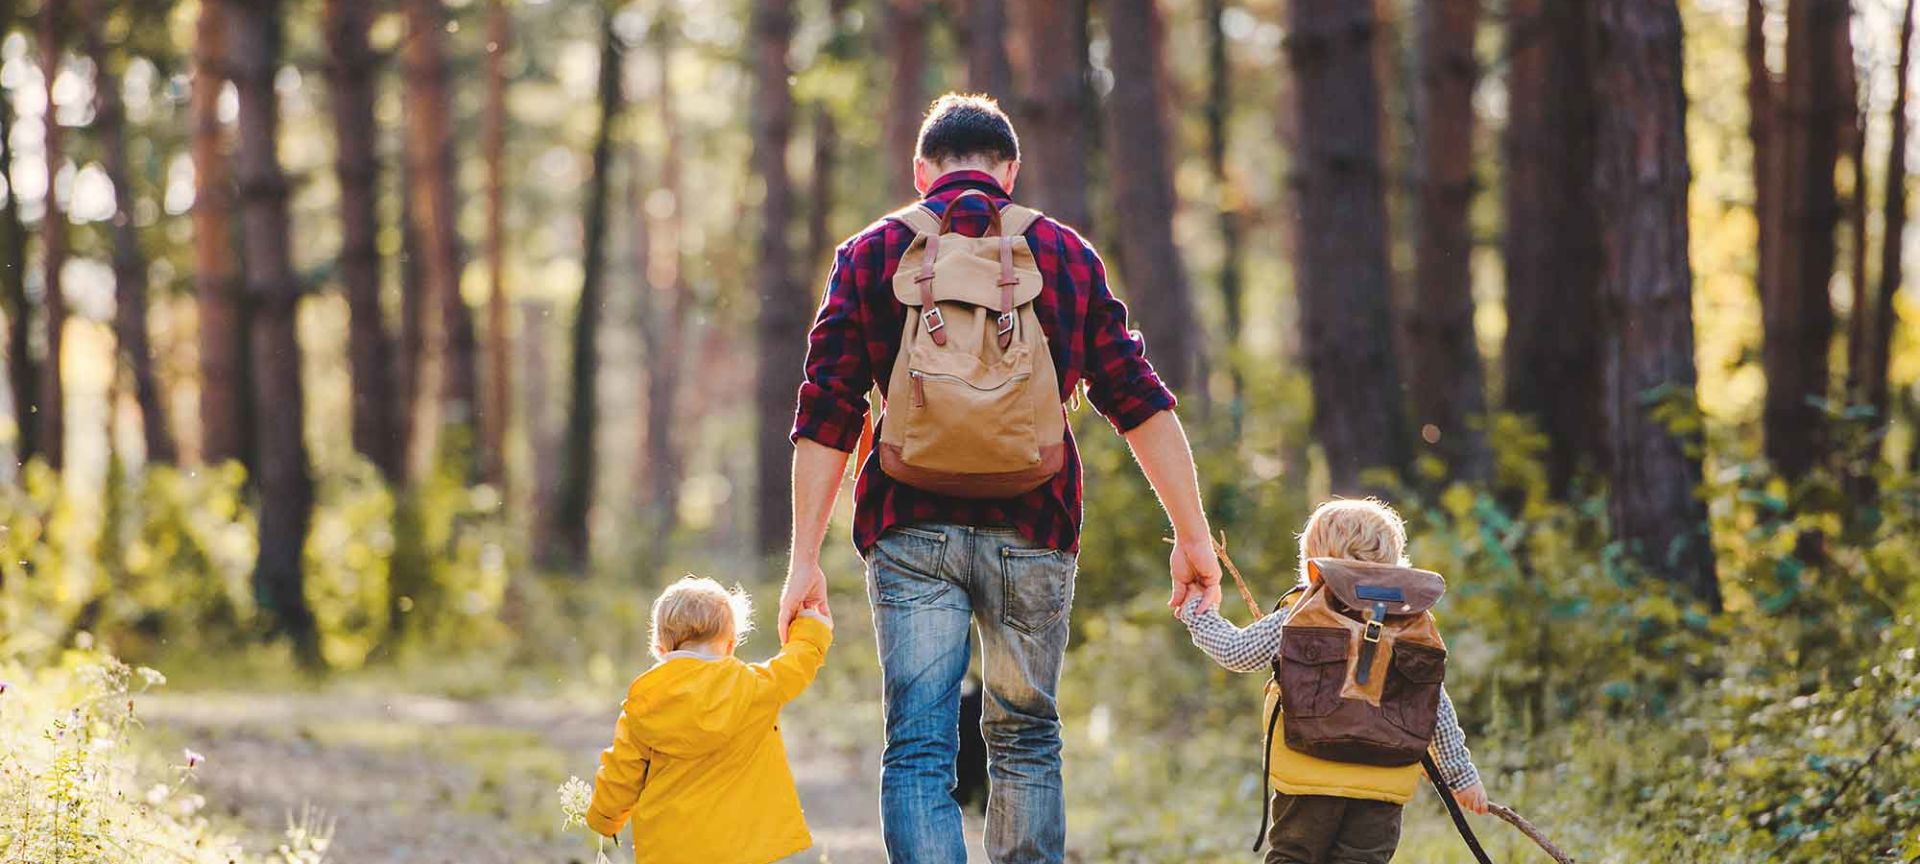 Odrasla osoba i dva deteta šetaju šumom